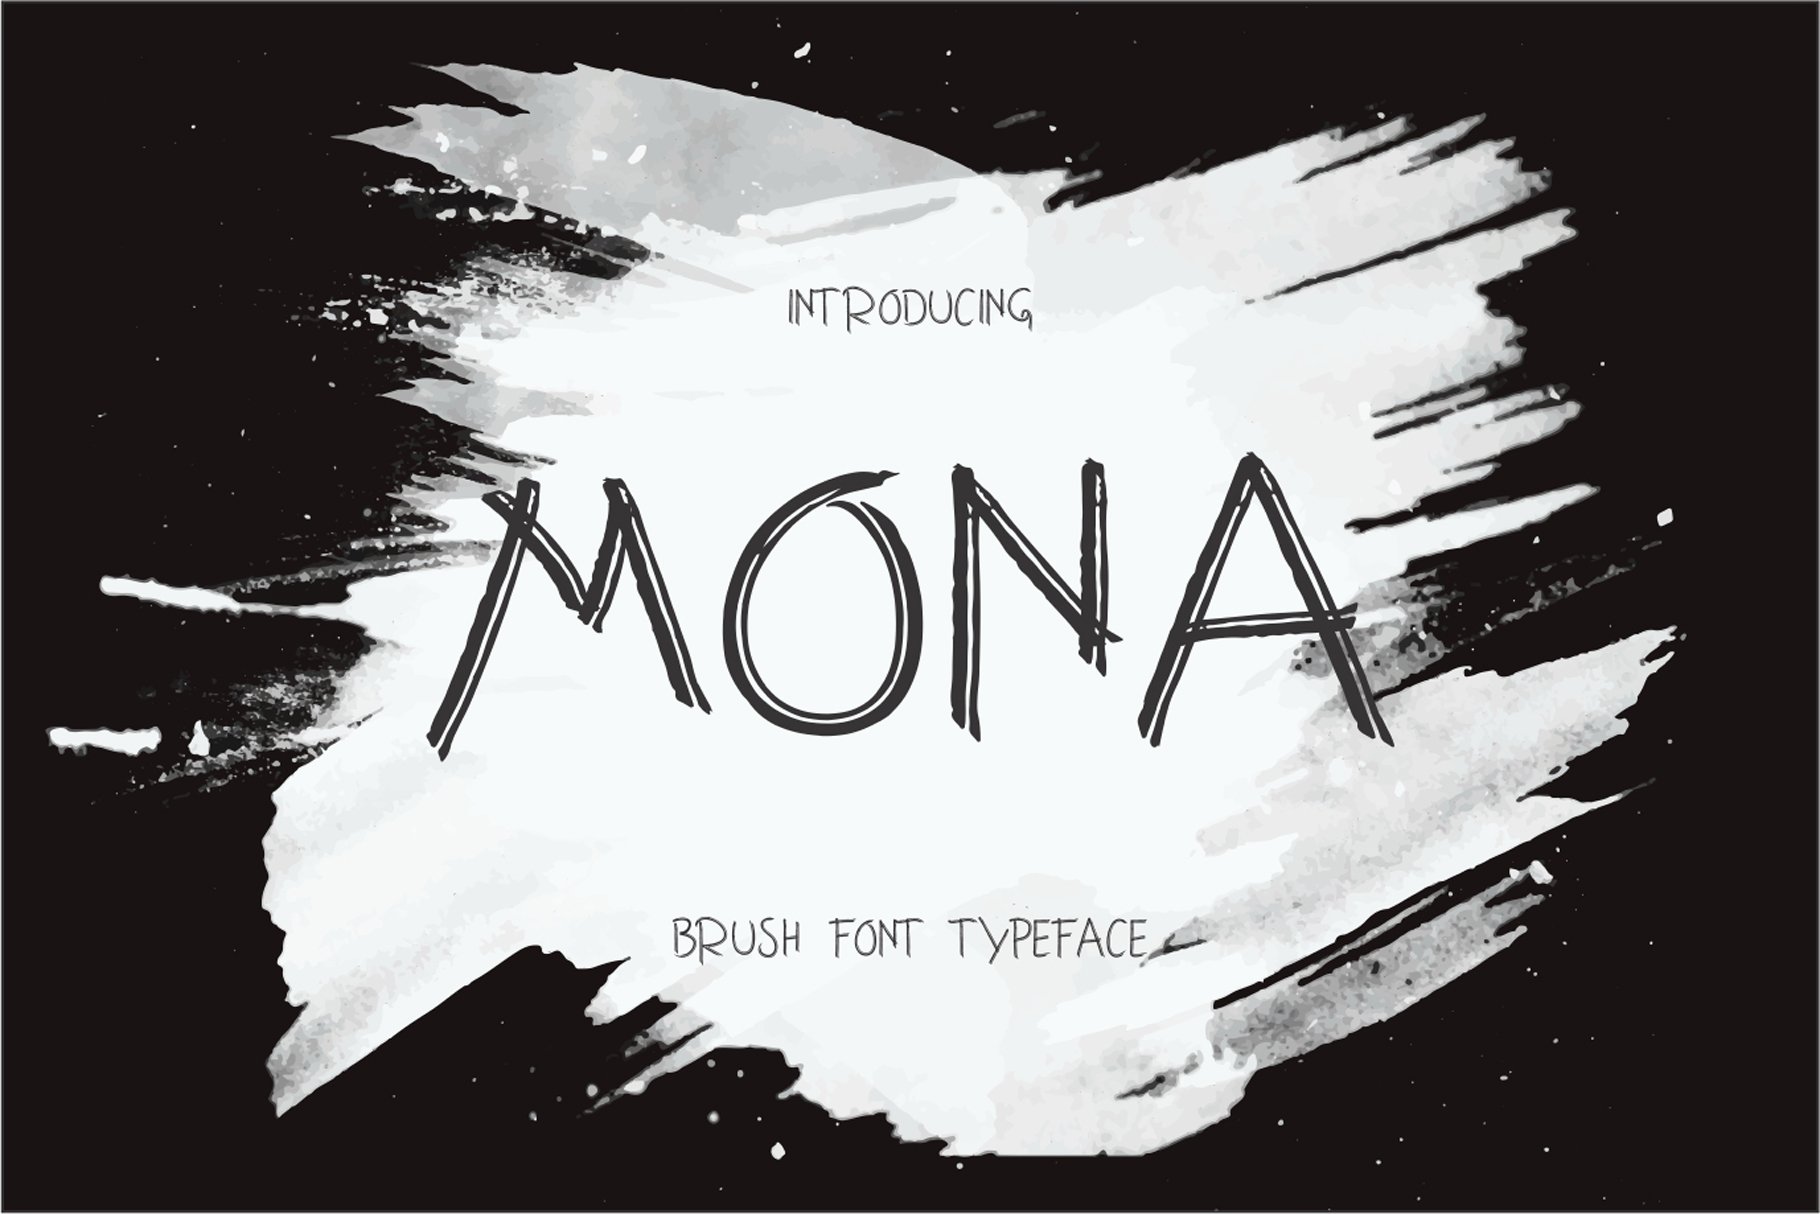 Mona cover image.